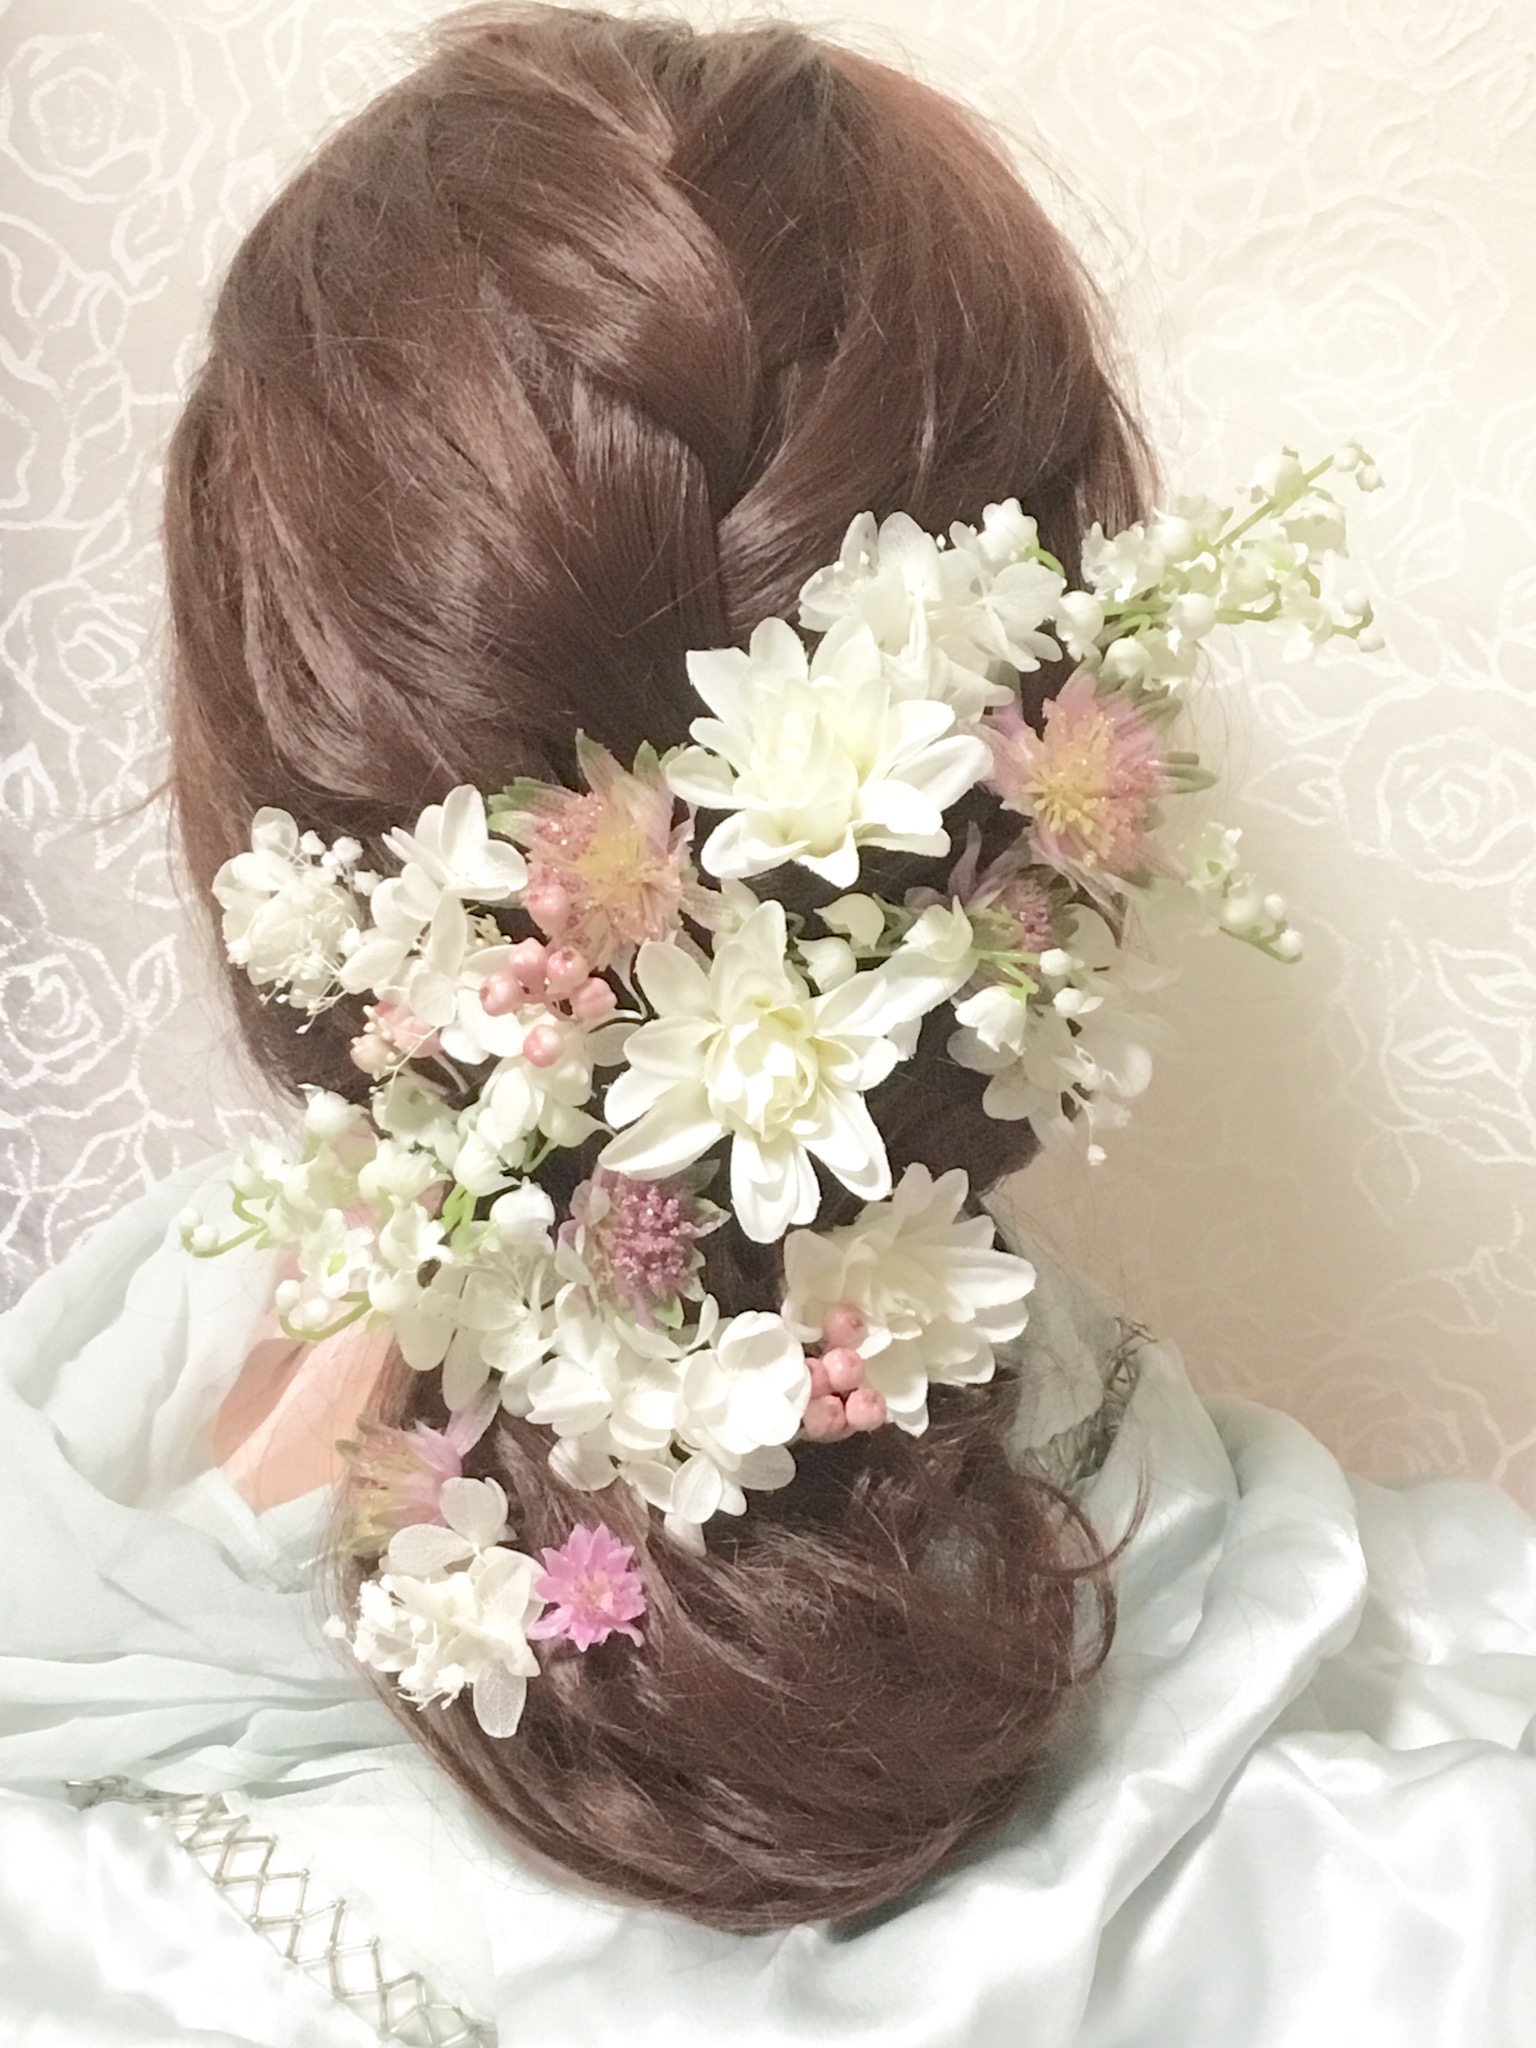 成人式 ミニダリアとスズランの髪飾りパーツセット Iichi ハンドメイド クラフト作品 手仕事品の通販